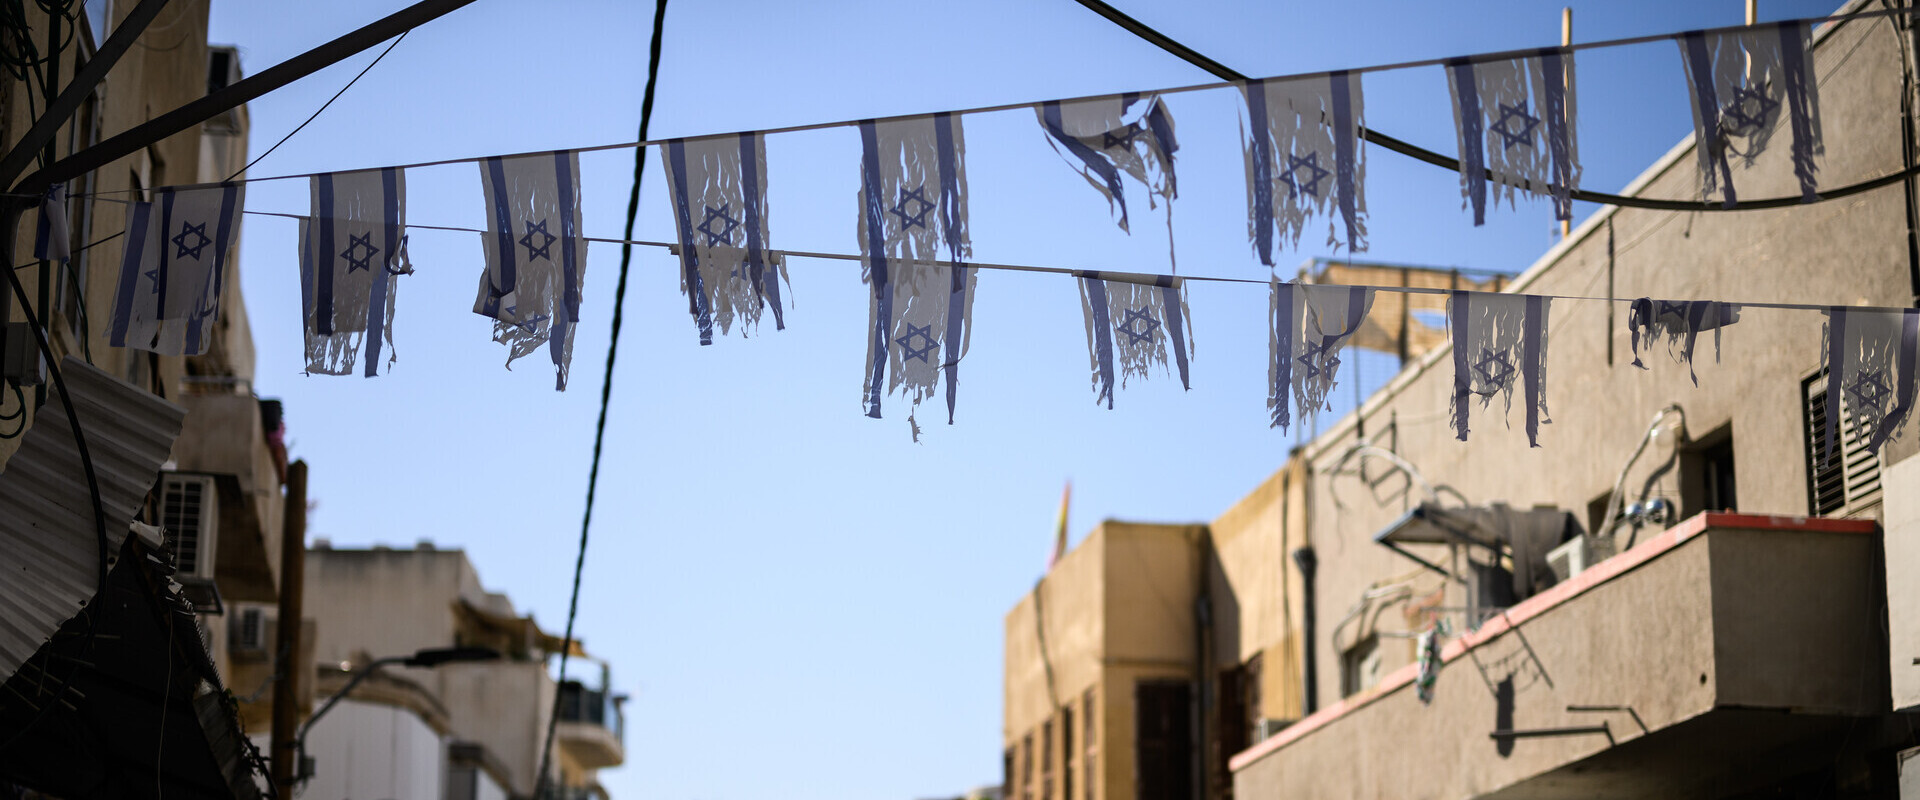 דגלי ישראל בשכונת פלורנטין בתל אביב, 21.10.23 (צילום: Leon Neal, Getty Images)